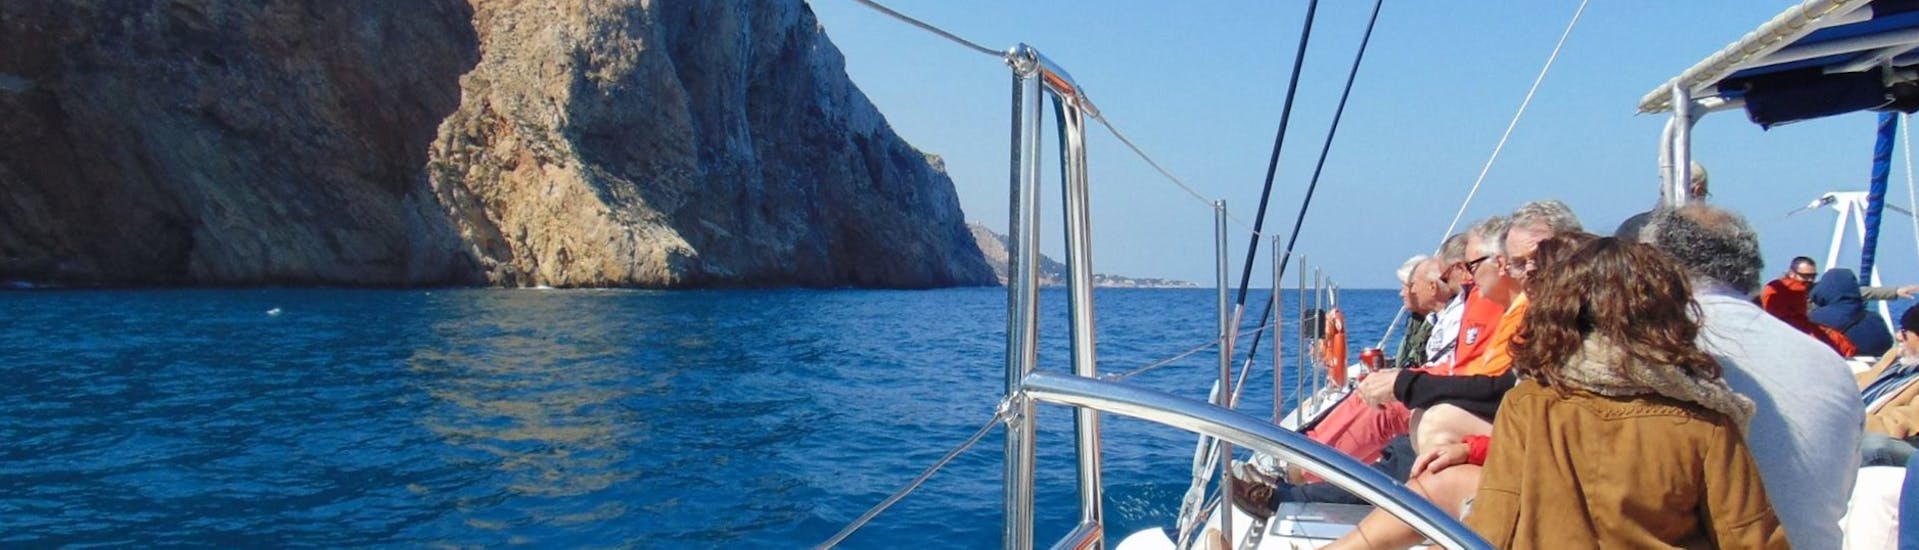 Des participants s'amusent à bord d'un catamaran à voile écologique lors d'une balade en bateau à voile dans la baie de Malaga avec Mundo Marino Costa del Sol.